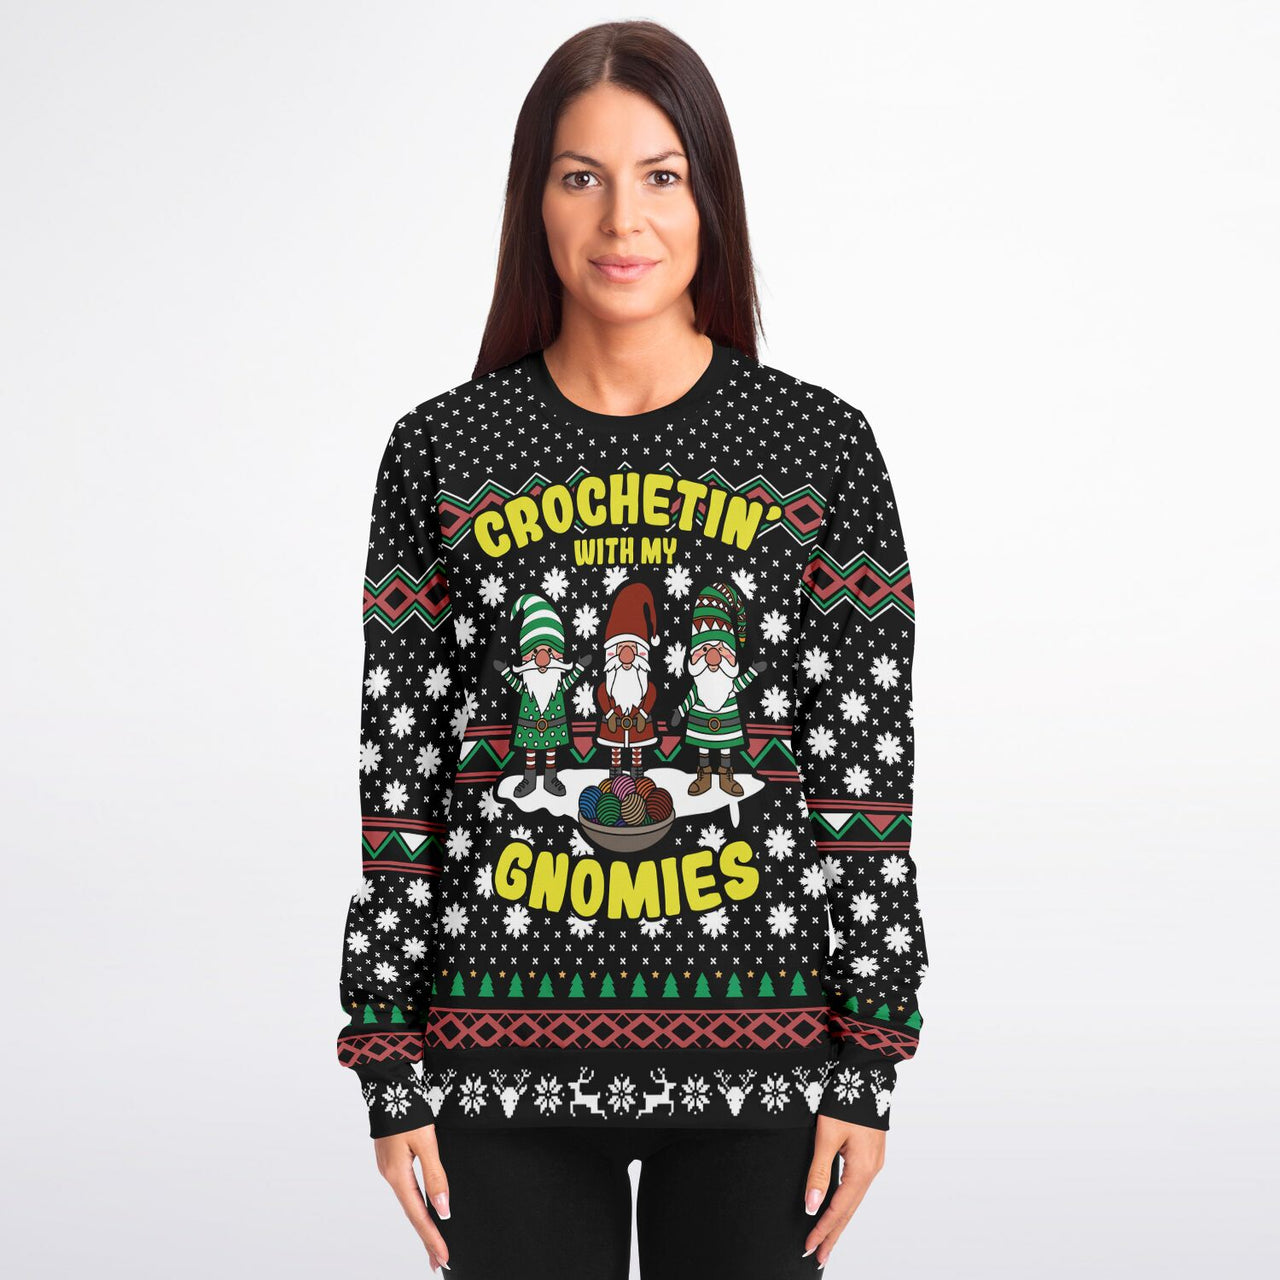 My Gnomies - Ugly Christmas Unisex Sweatshirt